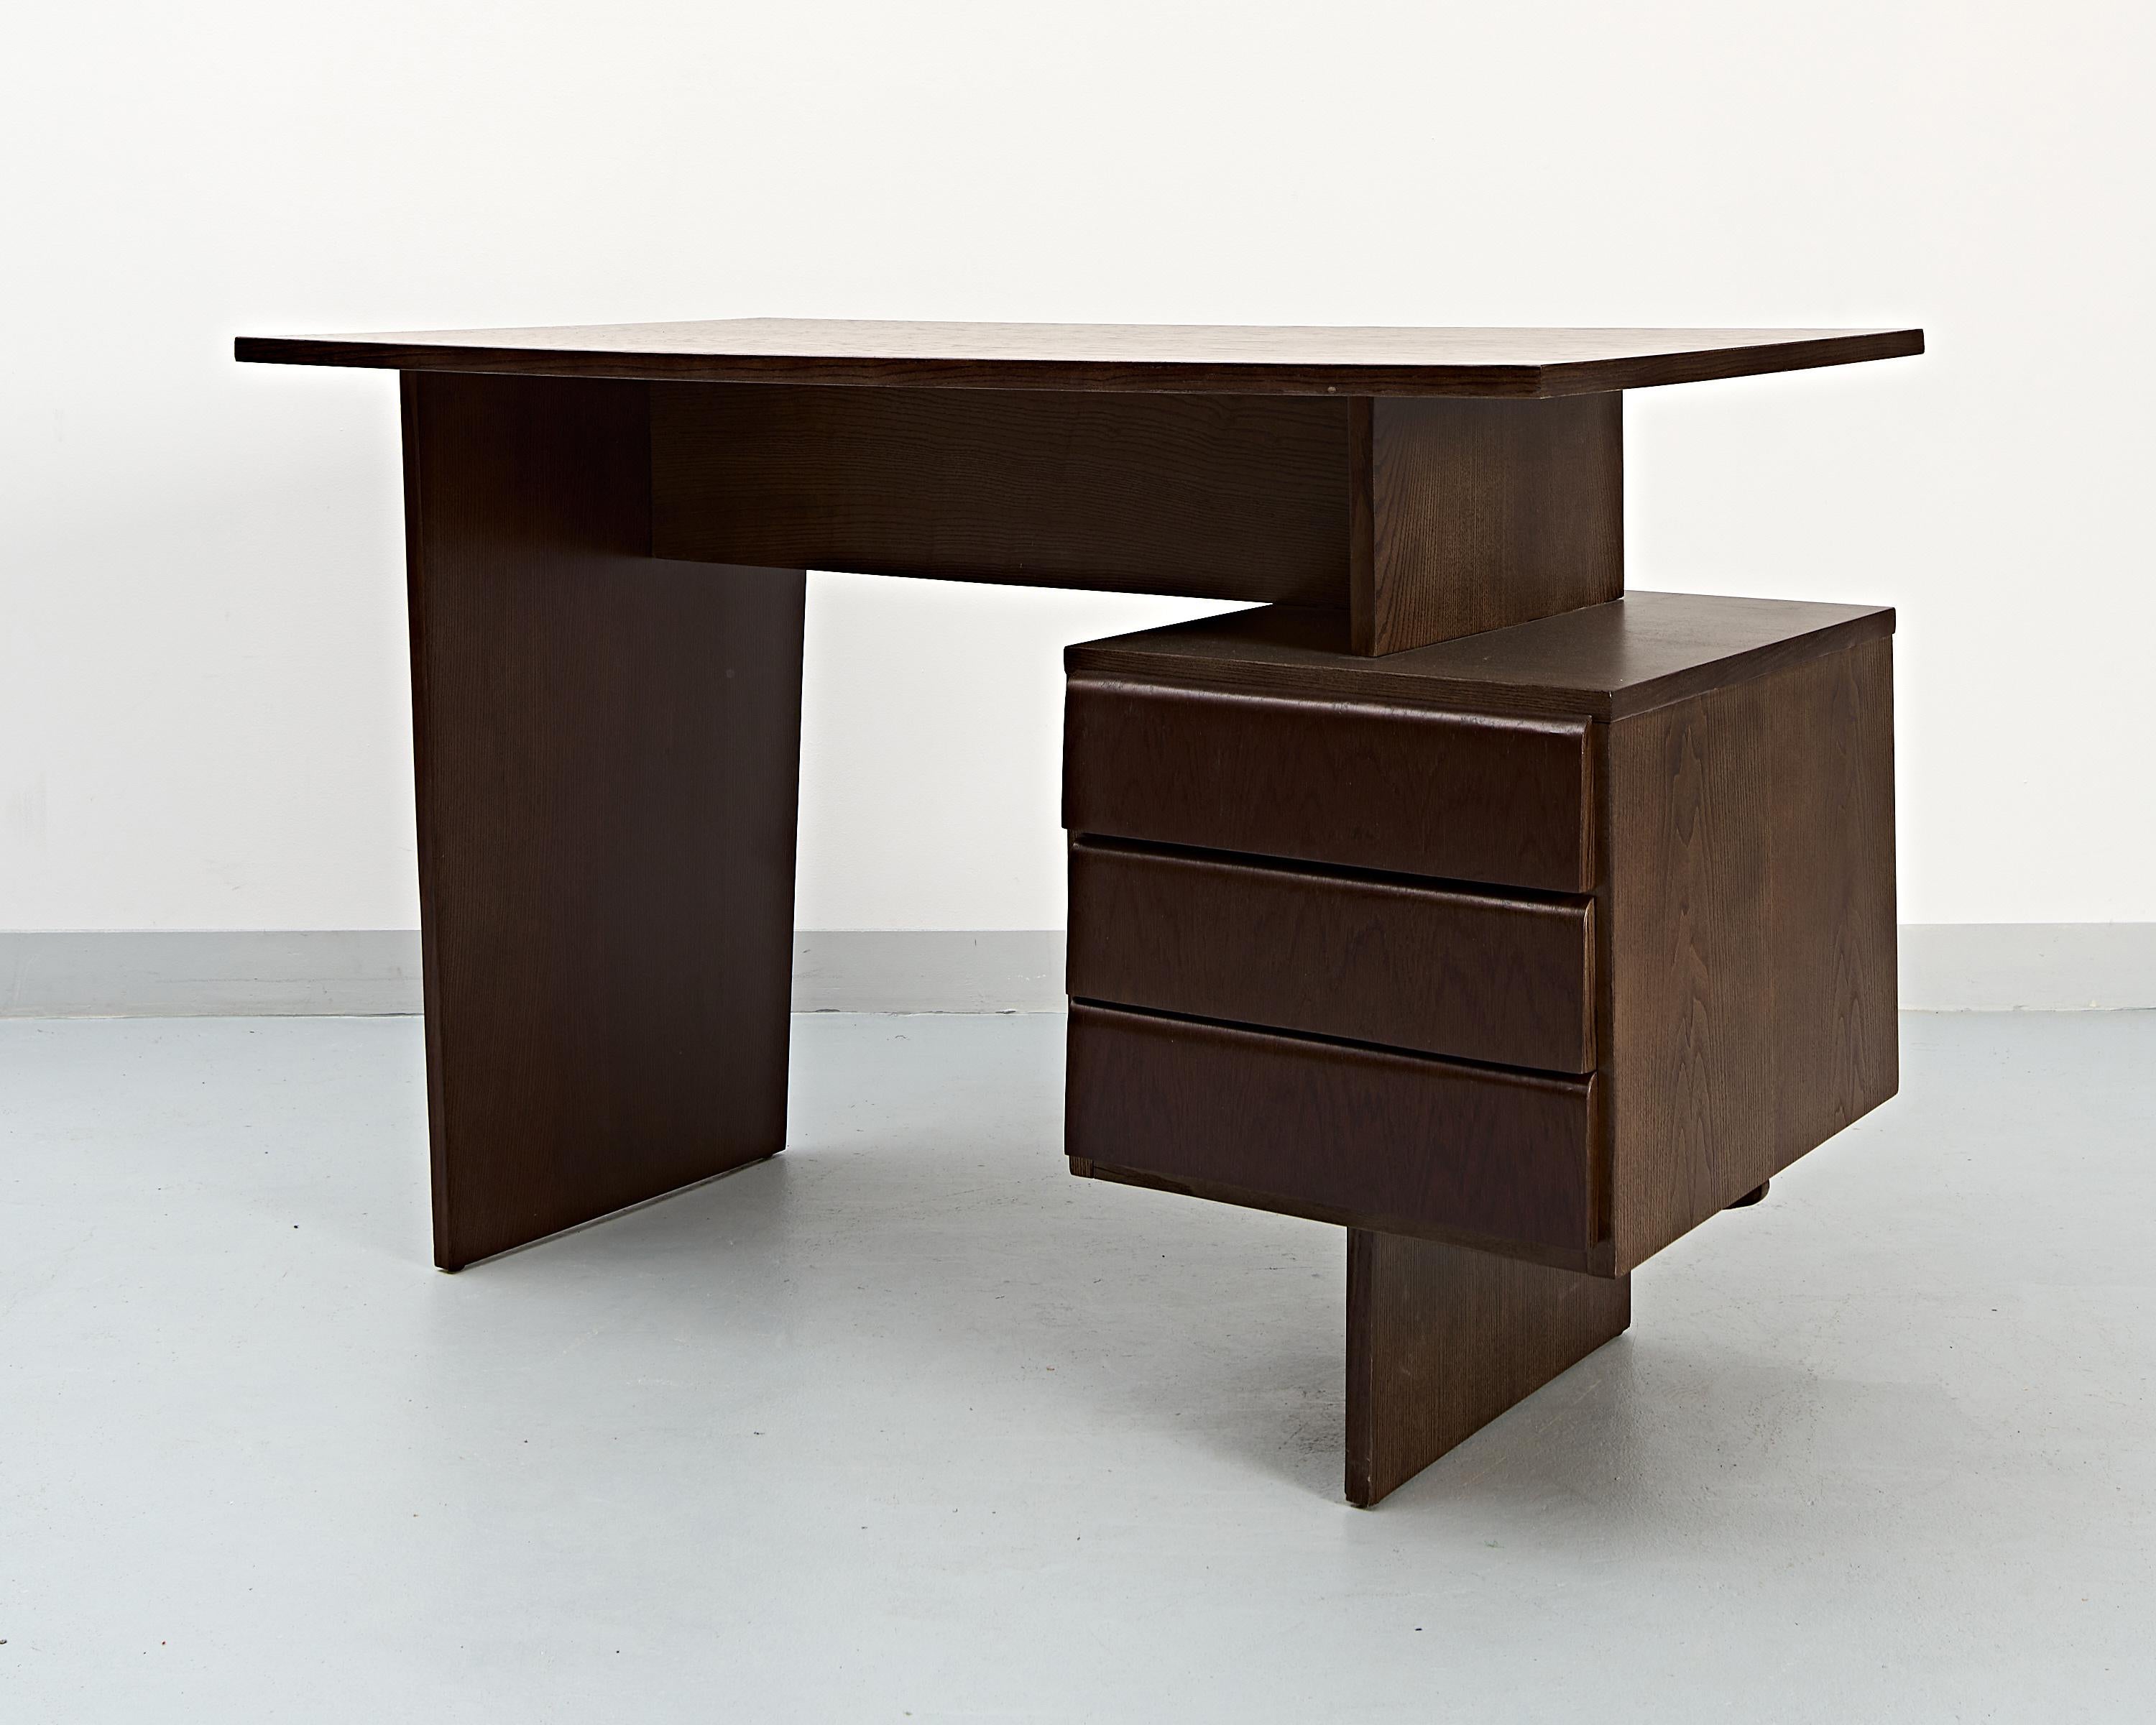 Ein von Bohumil Landsman entworfener Schreibtisch aus Eichenholz, der in den 1970er Jahren in der ehemaligen Tschechoslowakei von der Möbelfabrik Jitona hergestellt wurde. 
Ein auffälliges Design.
Oberflächen gereinigt, gebeizt und lackiert.